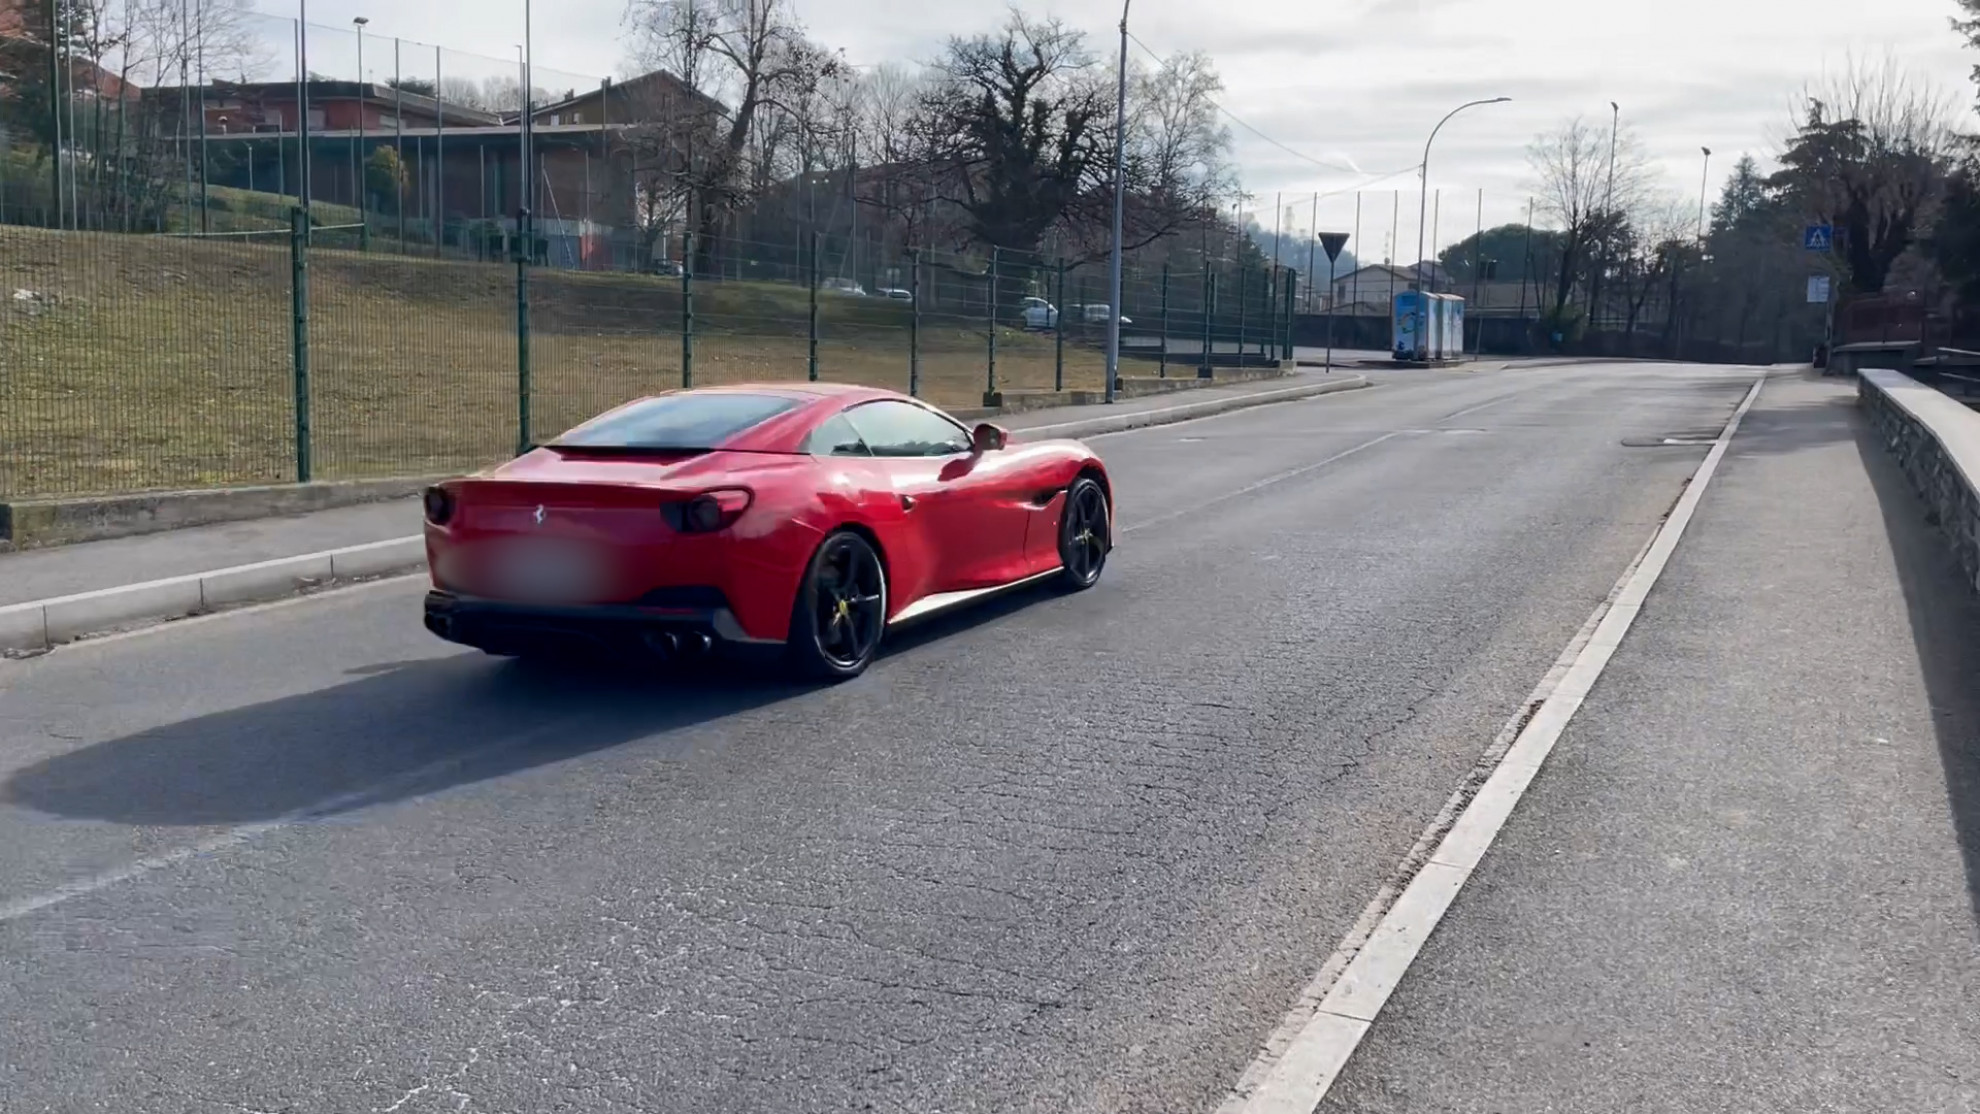 Ferrari in zona 30: «Senza dubbio è un pirata della strada» - Ticinonline